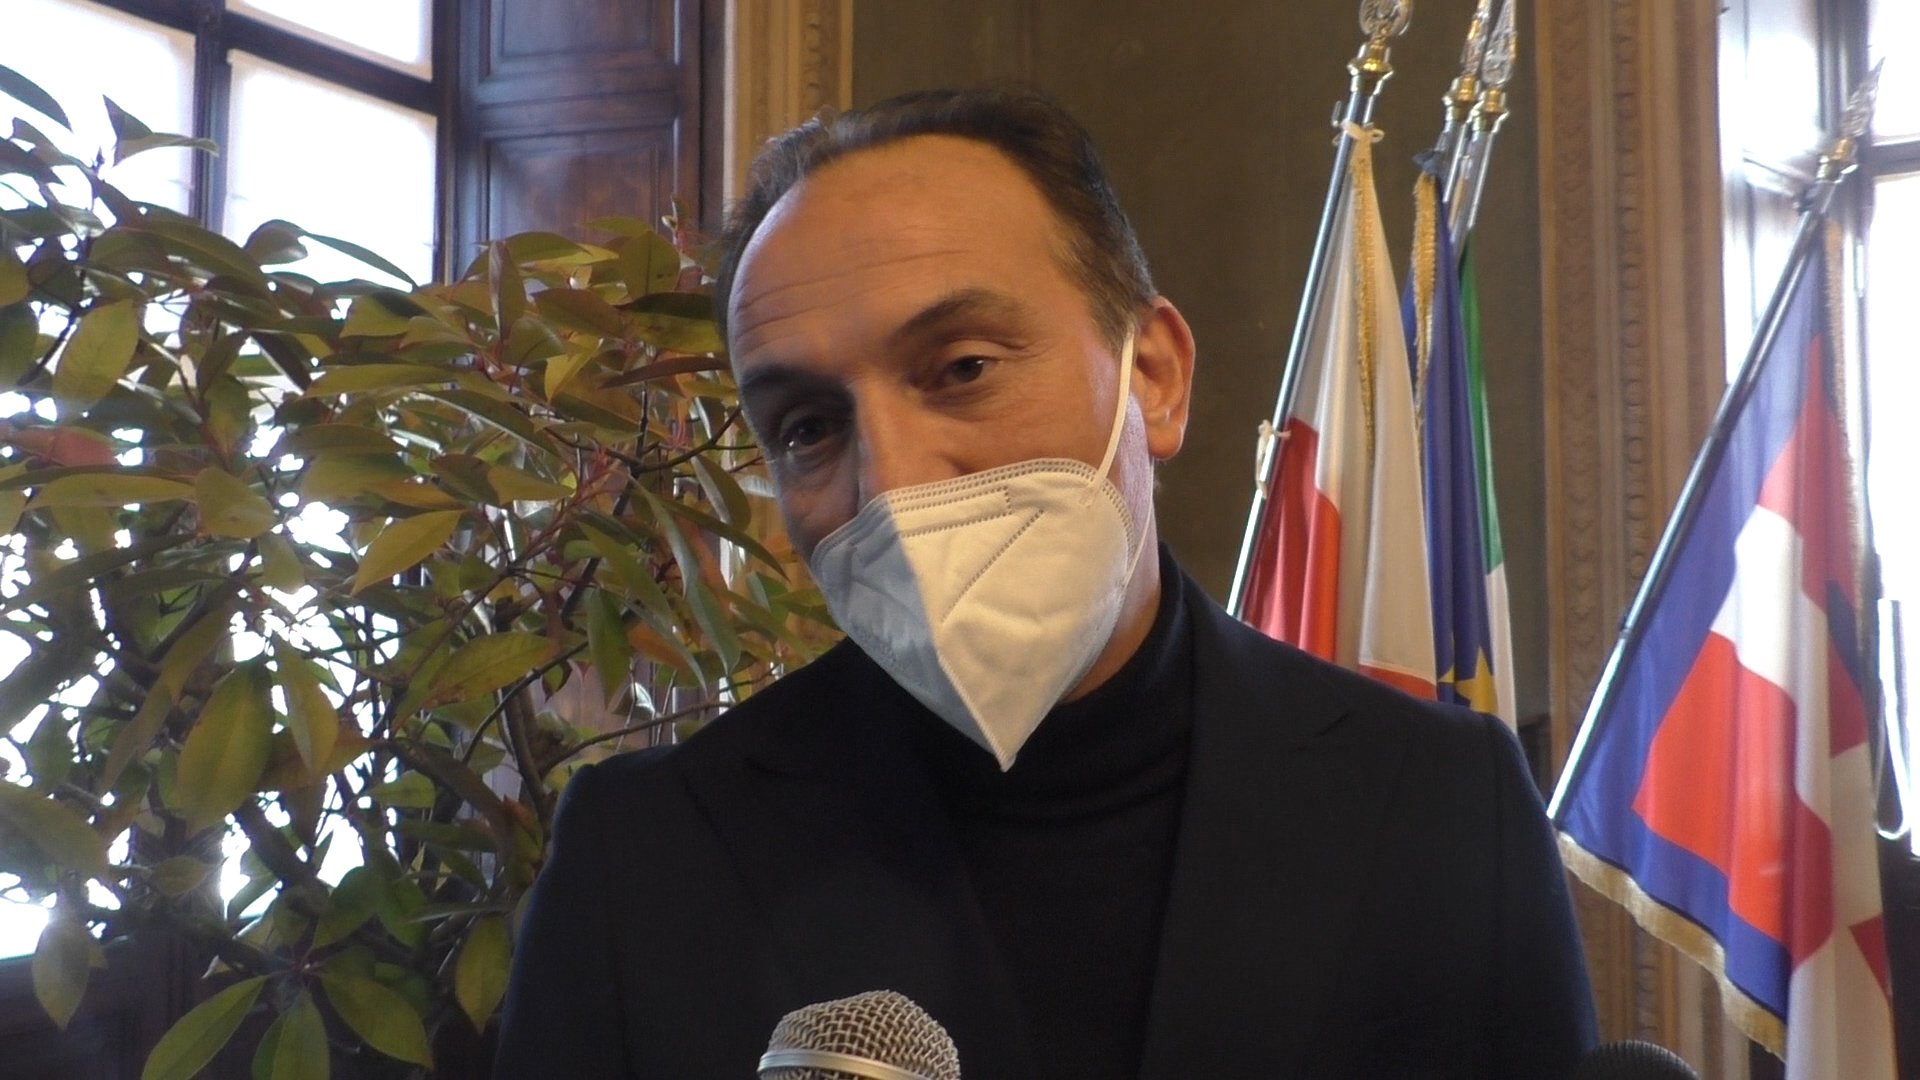 Da lunedì Piemonte torna in zona gialla, Cirio: “Continuiamo a essere responsabili e vacciniamoci”